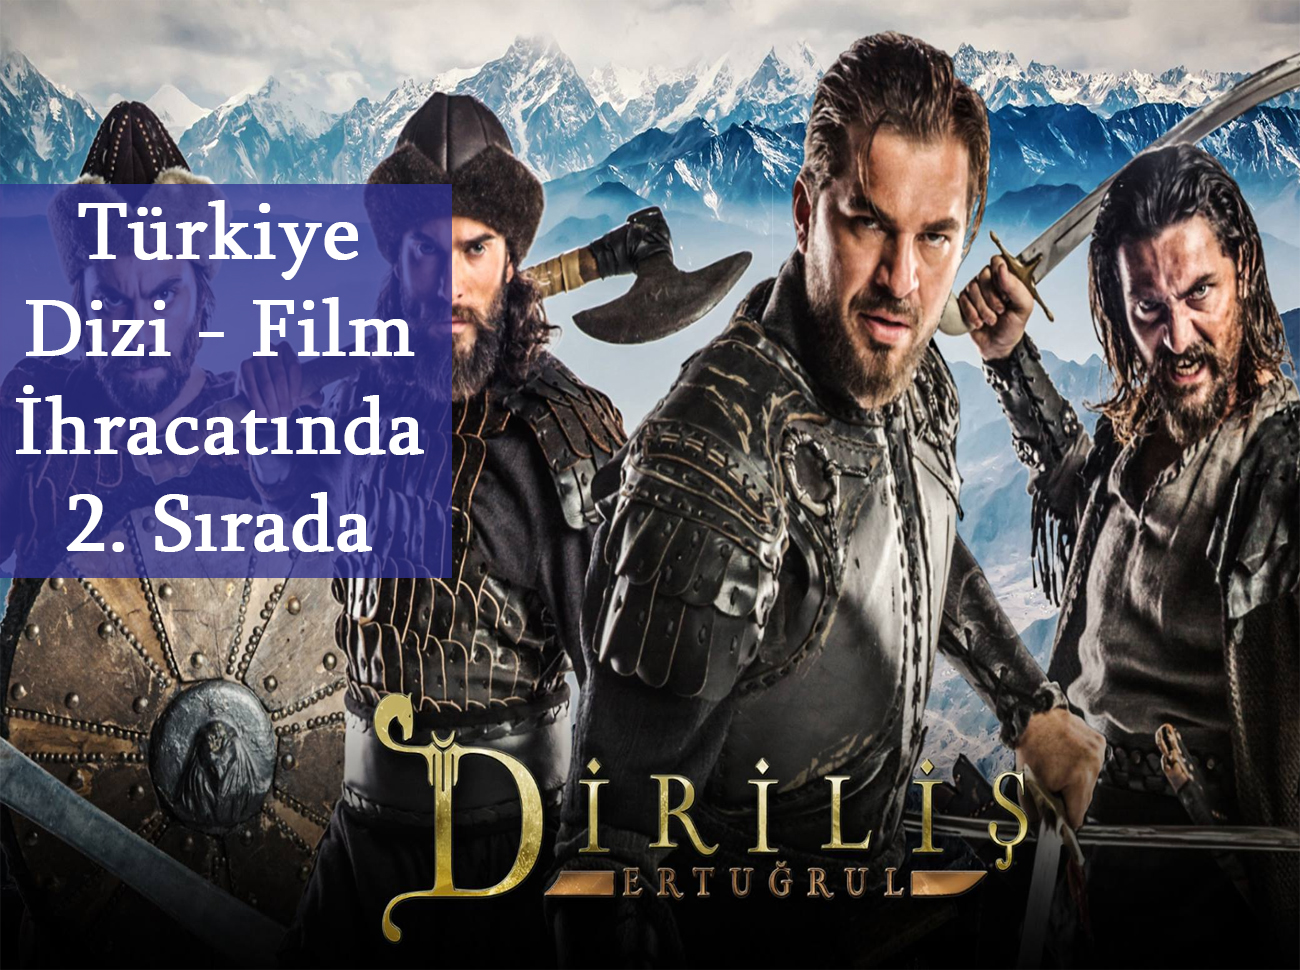 Türkiye Dizi - Film İhracatı